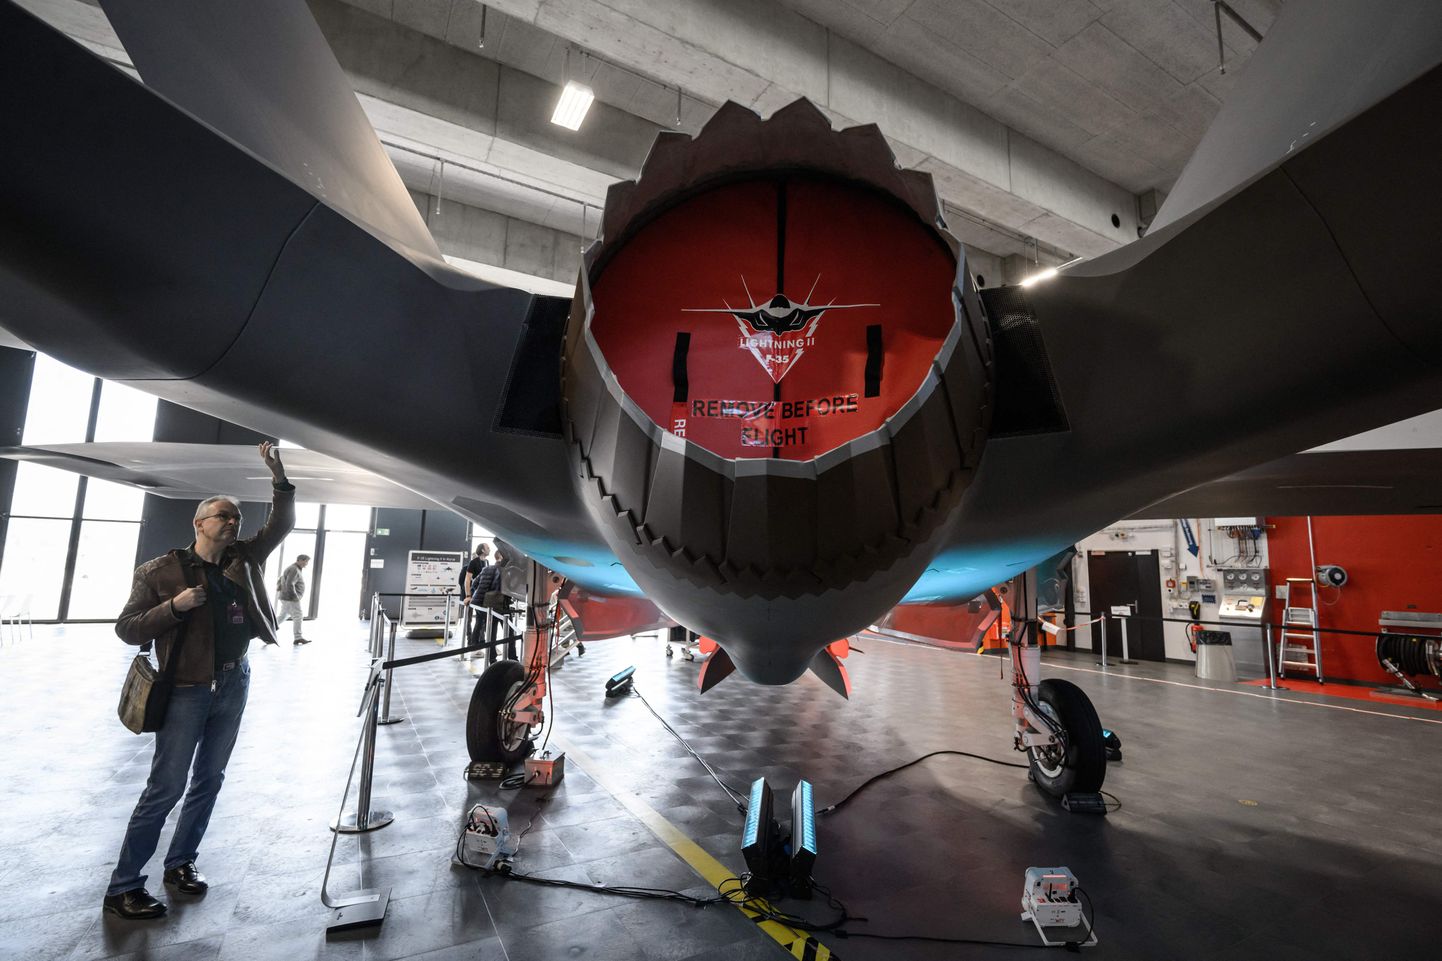 Ajakirjanik 24. märtsil 2022 Šveitsi Emmeni lennubaasis Lockheed Martini hävituslennuki F-35 A Lightning II mudelit uurimas.